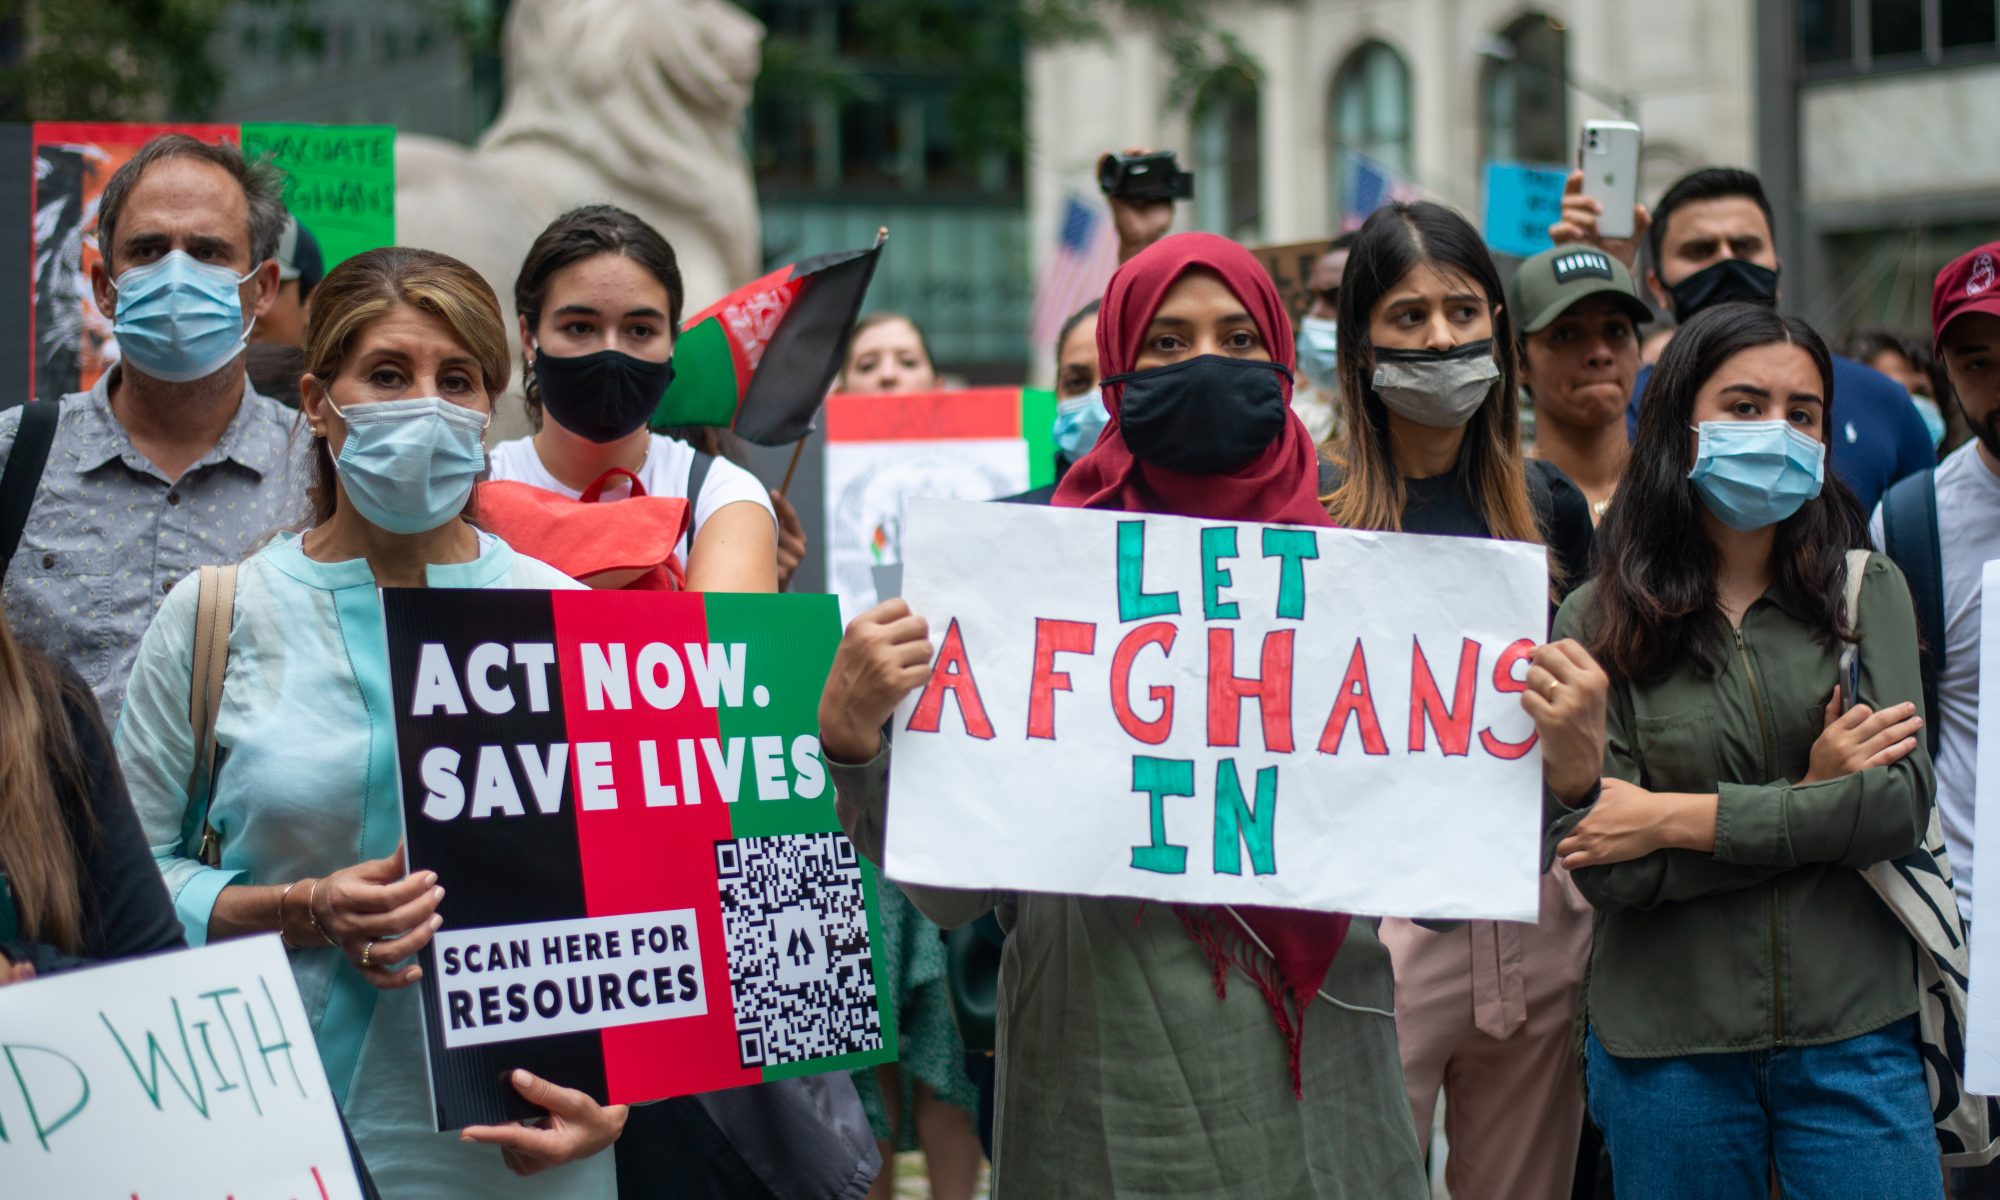 Eine Gruppe steht zusammen und hält Plakate hoch. Auf den Plakaten steht "Let Afghans in" und "Act now, save lifes"